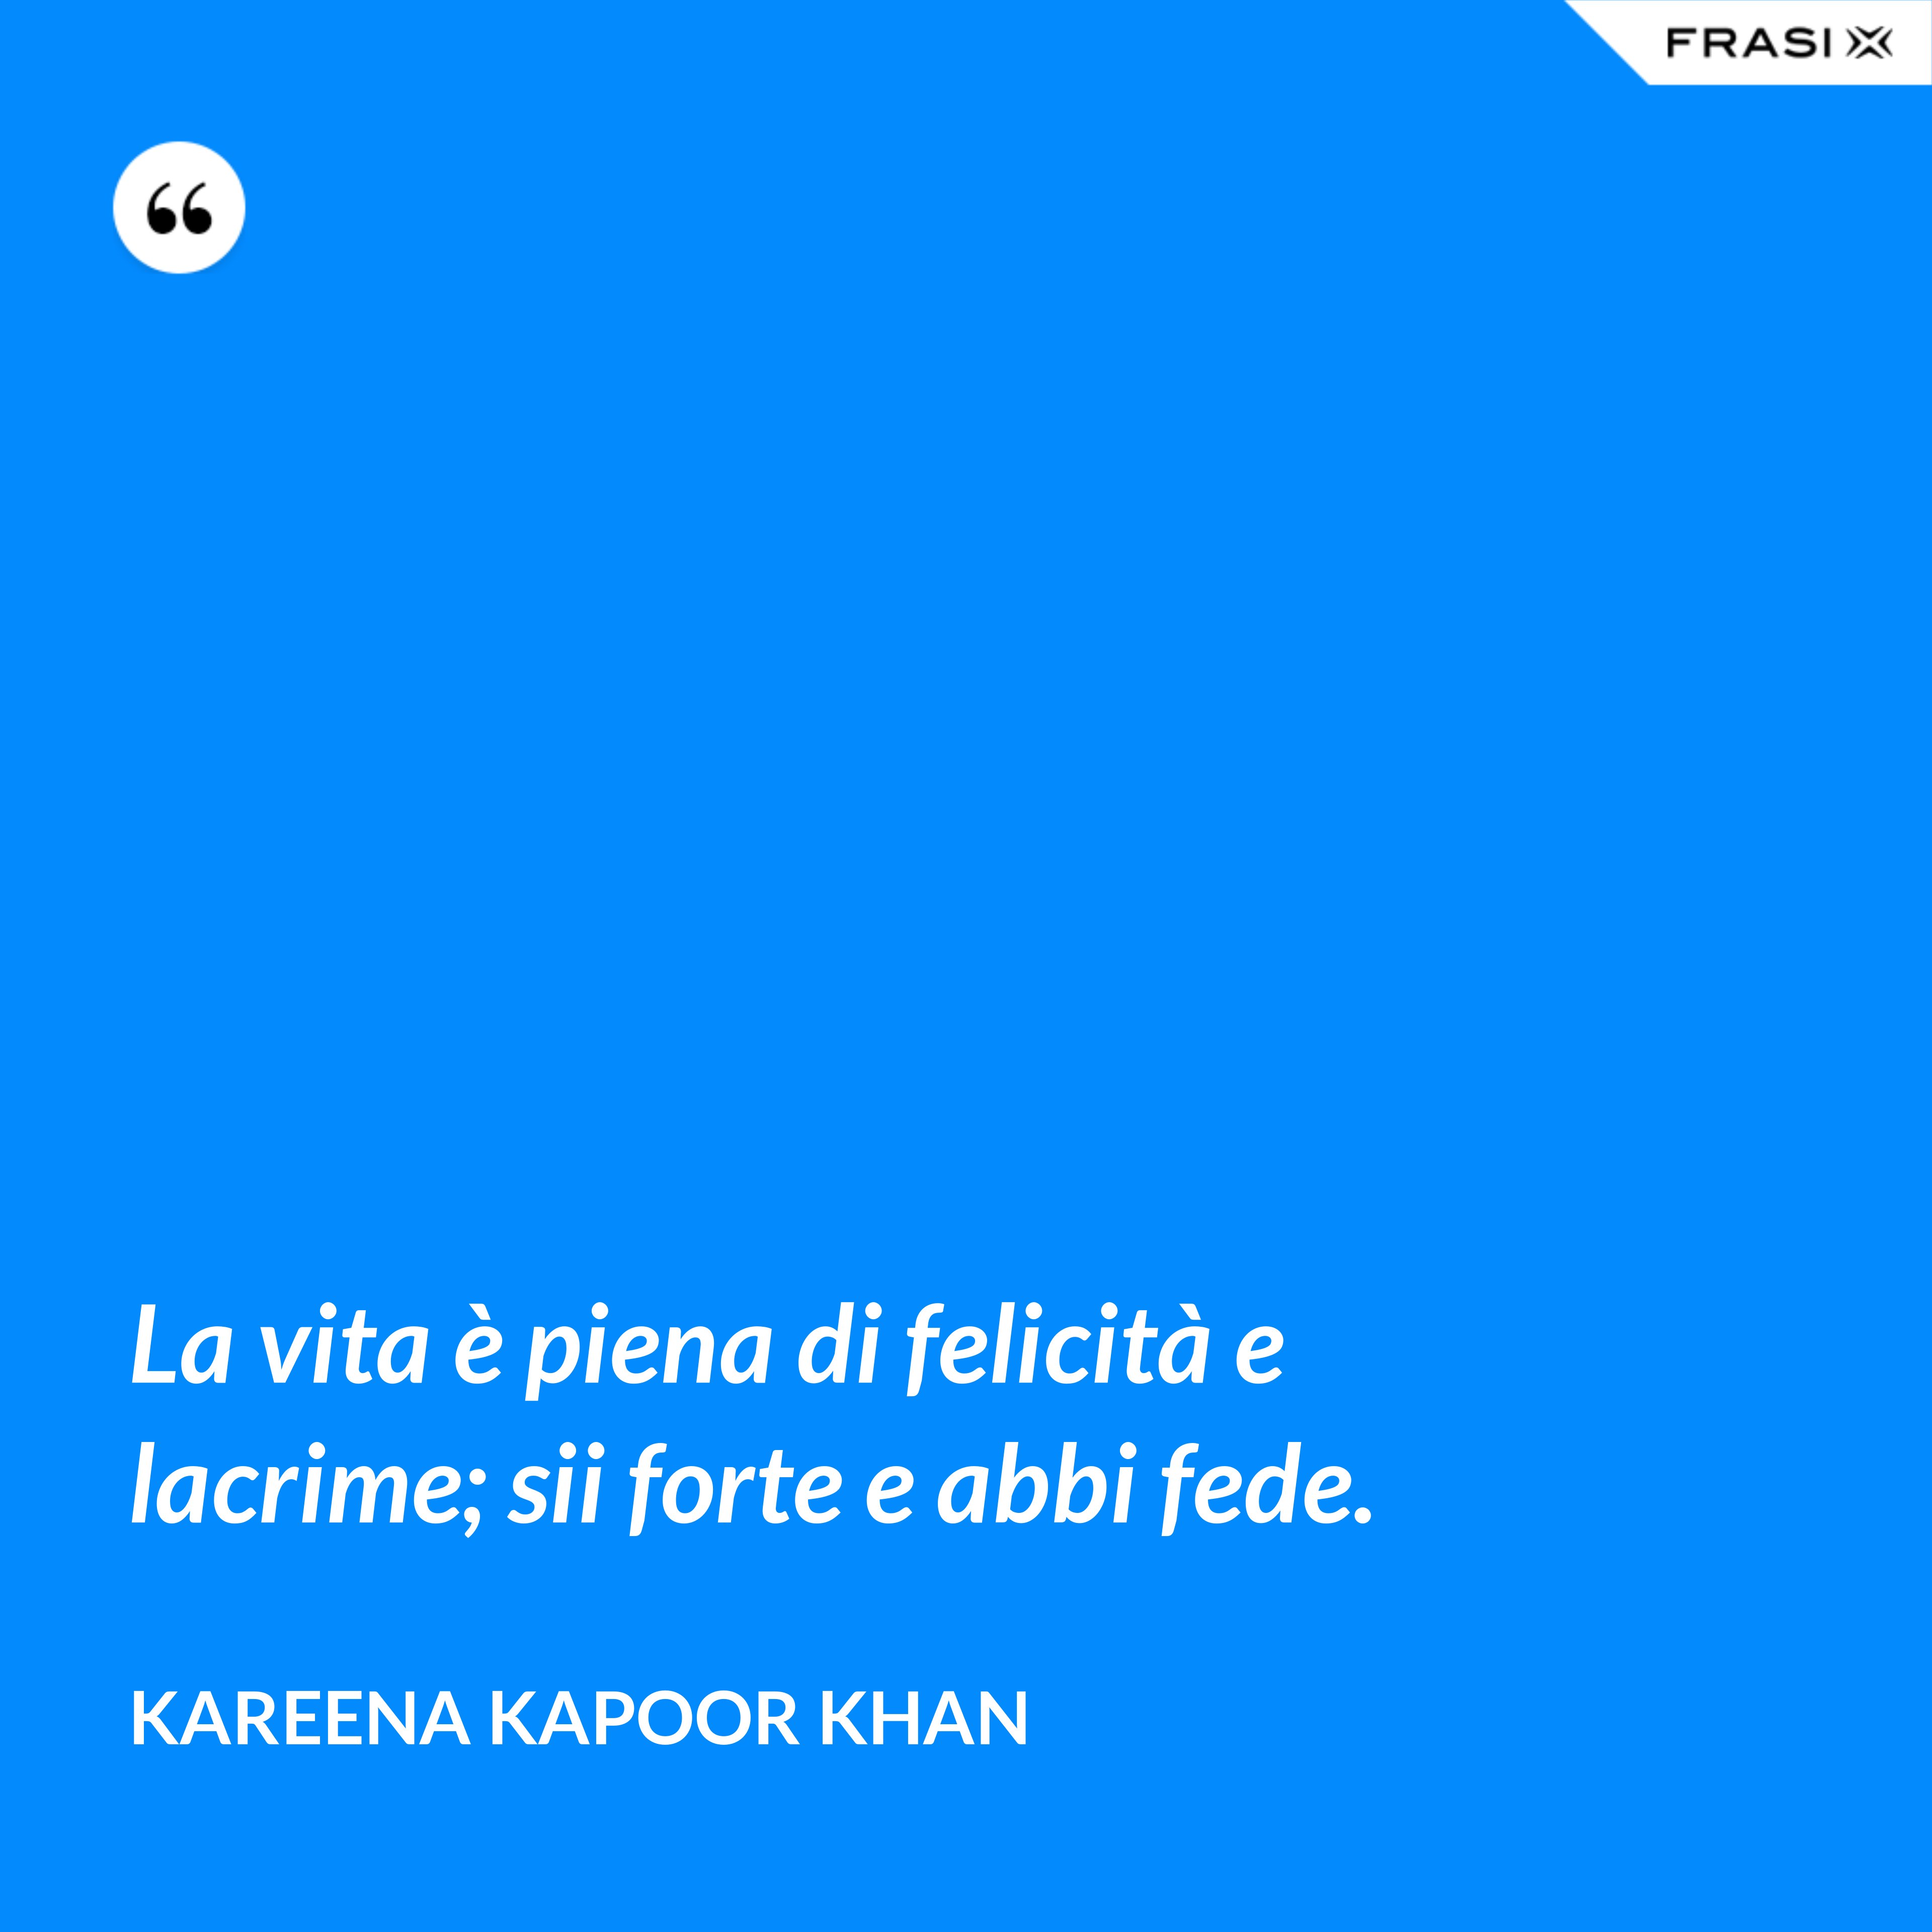 La vita è piena di felicità e lacrime; sii forte e abbi fede. - Kareena Kapoor Khan